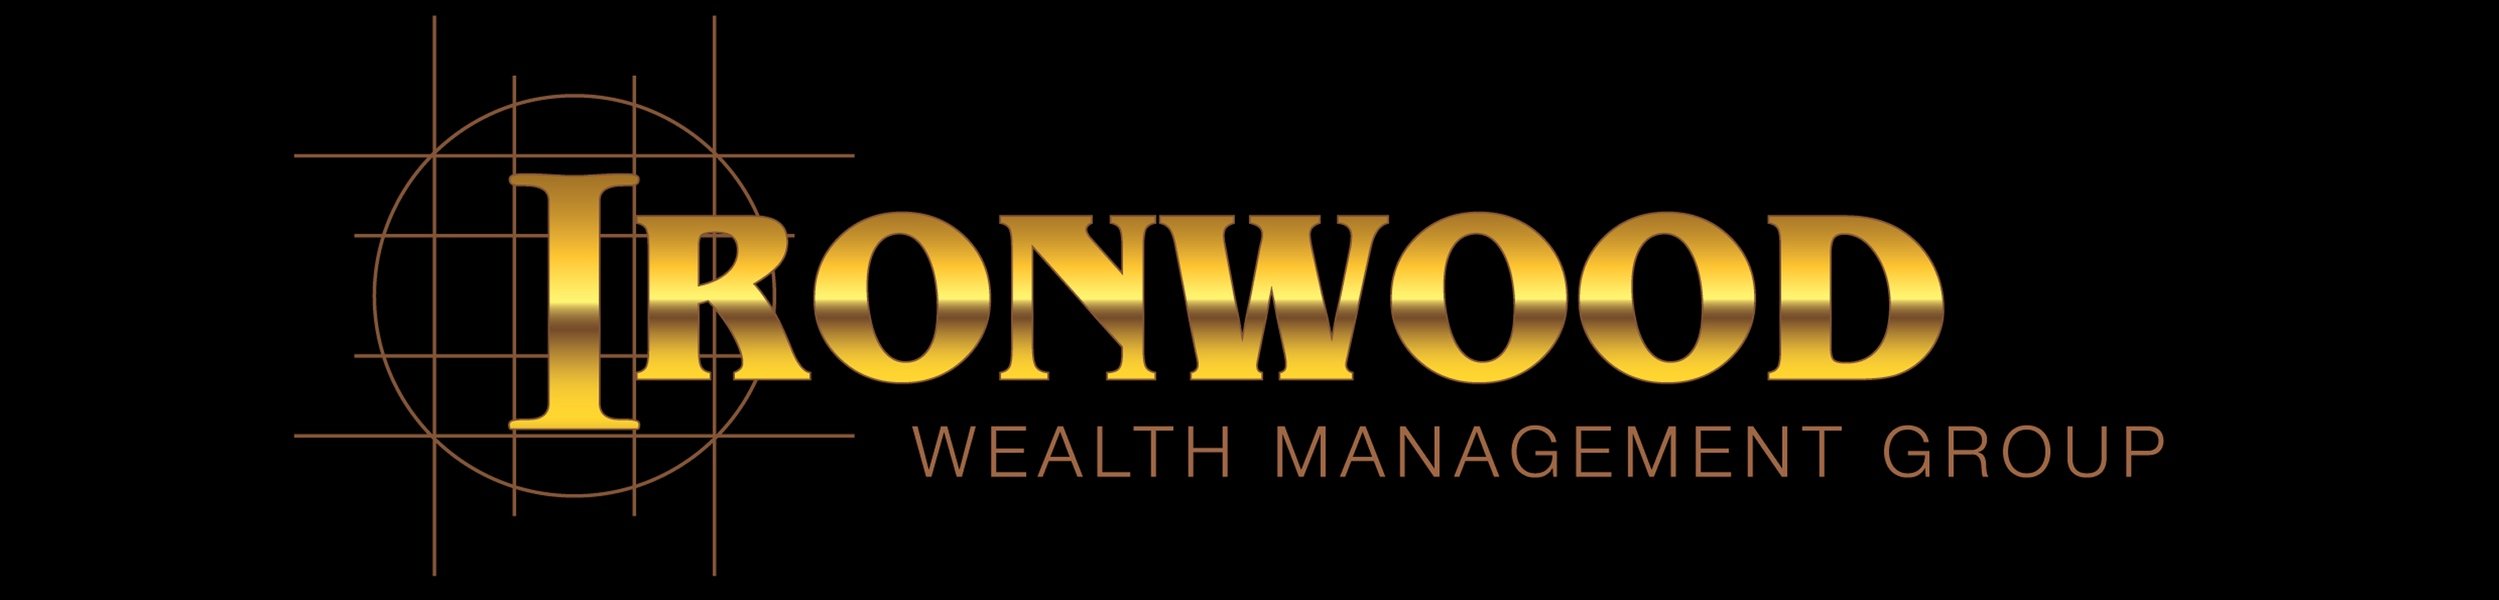 Ironwood Wealth Management Group Inc.